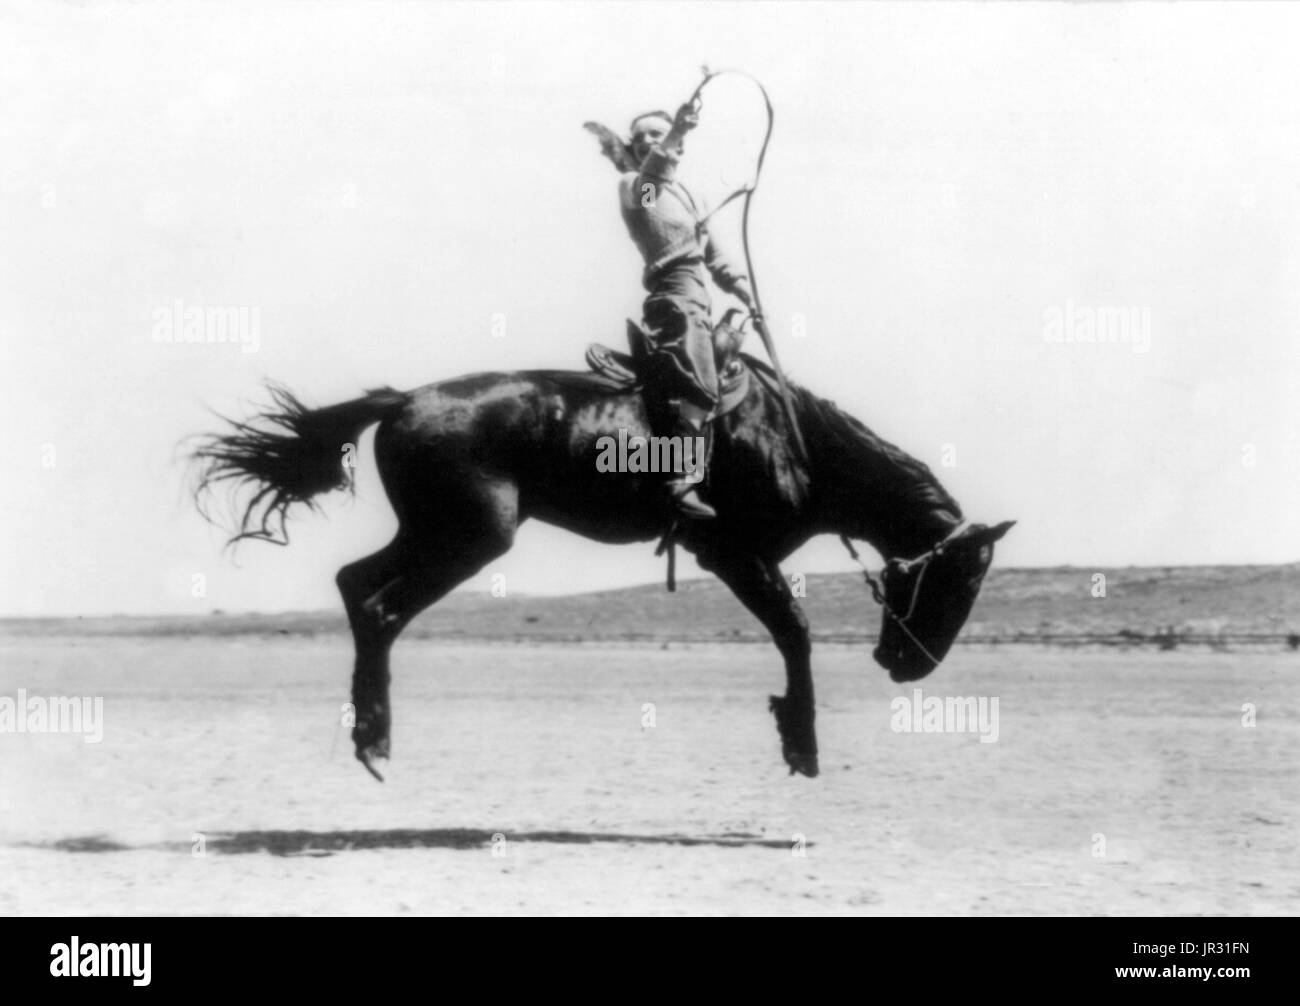 Canutt Champion Dame Fahrer der Welt in Winnemucca, 1919. Kitty Canutt Künstlernamen Kitty Wilks (15. Juli 1899 - 3. Juni 1988), war eine professionelle Bronc Reiter und das all-around Champion Cowgirl auf 1916 Pendleton Round-Up in Pendleton, Oregon, für ihr unruhiges Pferd und Staffellauf Veranstaltungen. Sie war als "Diamond Girl" oder "Diamond Kitty" bekannt, weil sie einen Diamanten in ihrem vorderen Zahn gesetzt hatte. Sie würde gelegentlich entfernen und den Diamanten verpfänden, wenn sie Eintrag Geld bestreiten erforderlich. Ruckeln ist eine Bewegung von einem Pferd, in dem das Tier senkt seinen Kopf und wirft die Hinterhand in, durchgeführt Stockfoto